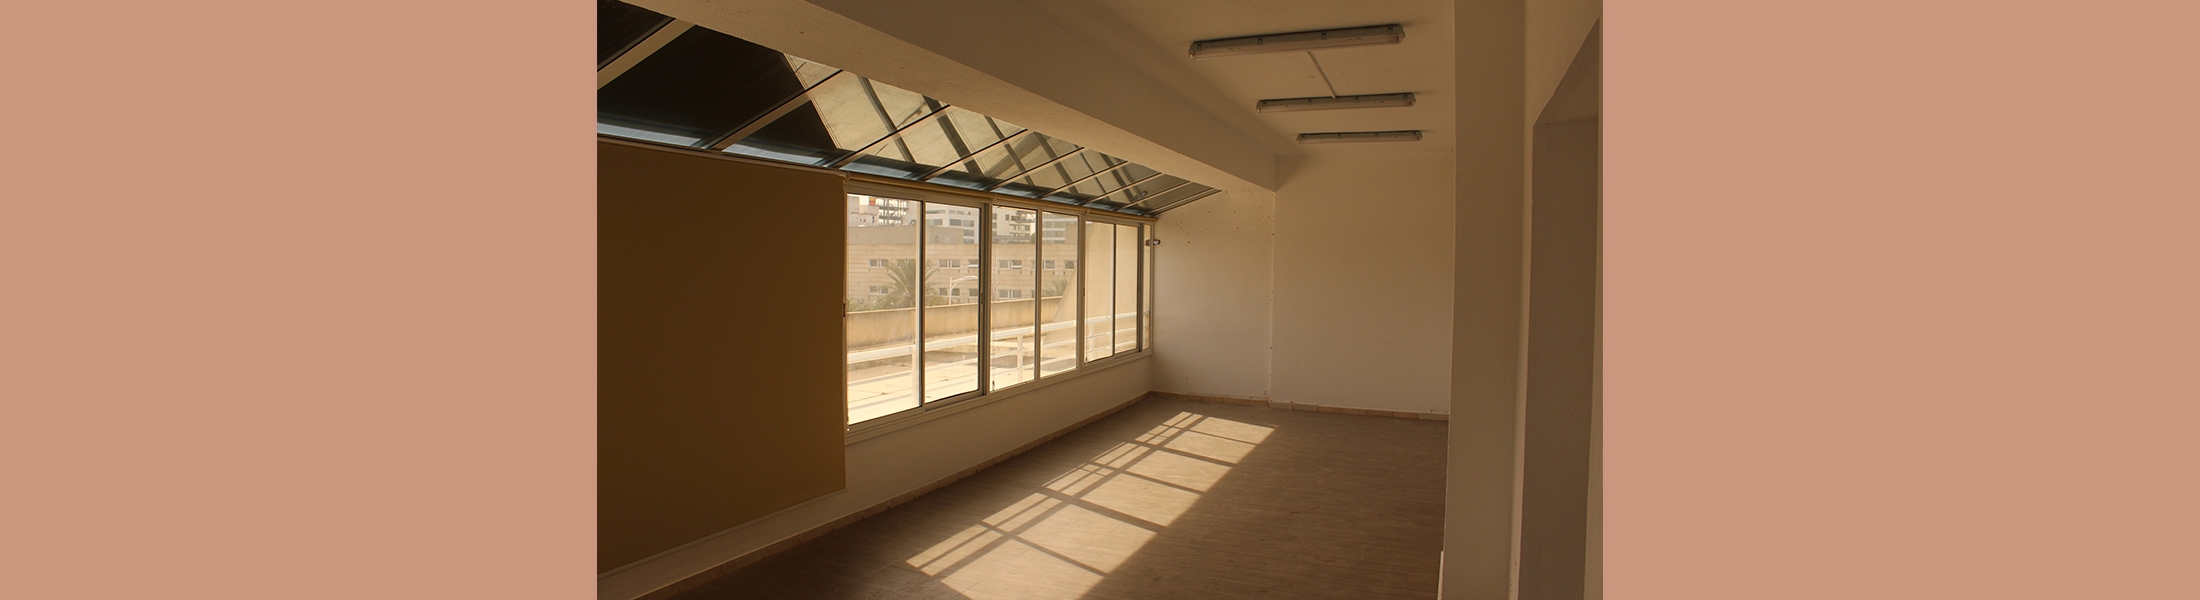 الشقة سيتي سنتر 1 بالمركز العمراني الشمالي – تونس (طلب العروض عدد 03 لسنة 2022)